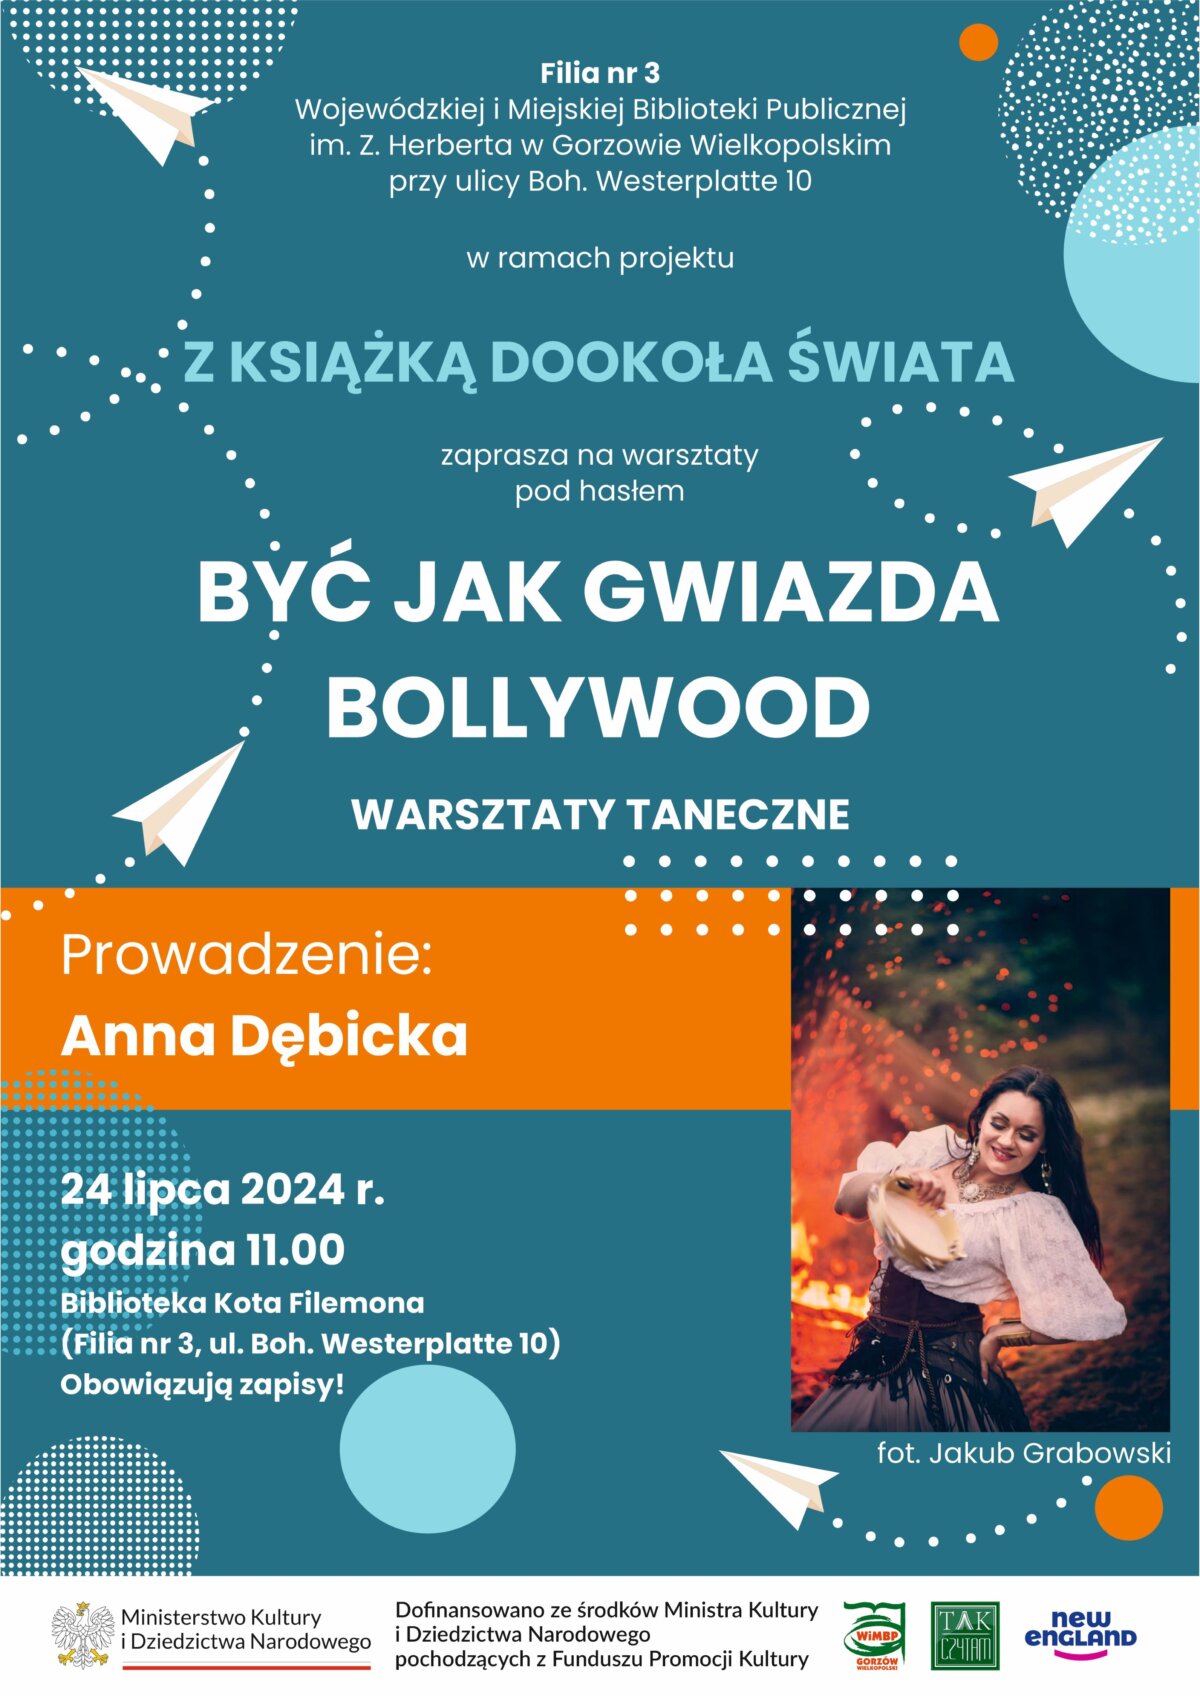 plakat promujący wydarzenie - spotkanie z Anną Dębicką.